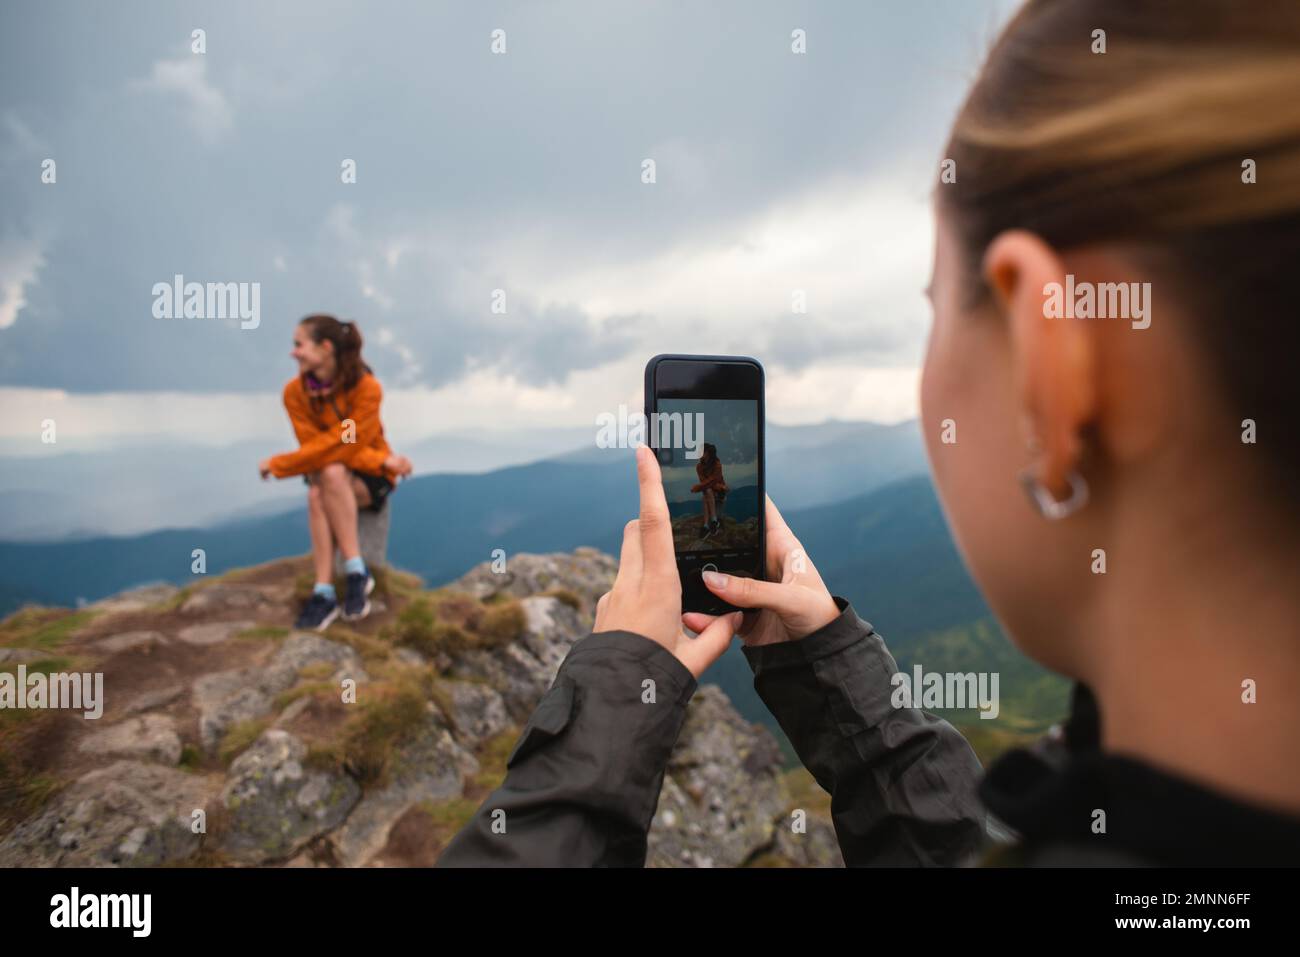 Dos amigos amigos jóvenes amigos excursionistas contra las montañas tomando una foto de un iphone en la naturaleza, Selfie teléfono inteligente moderno, usando el teléfono, amistad Foto de stock